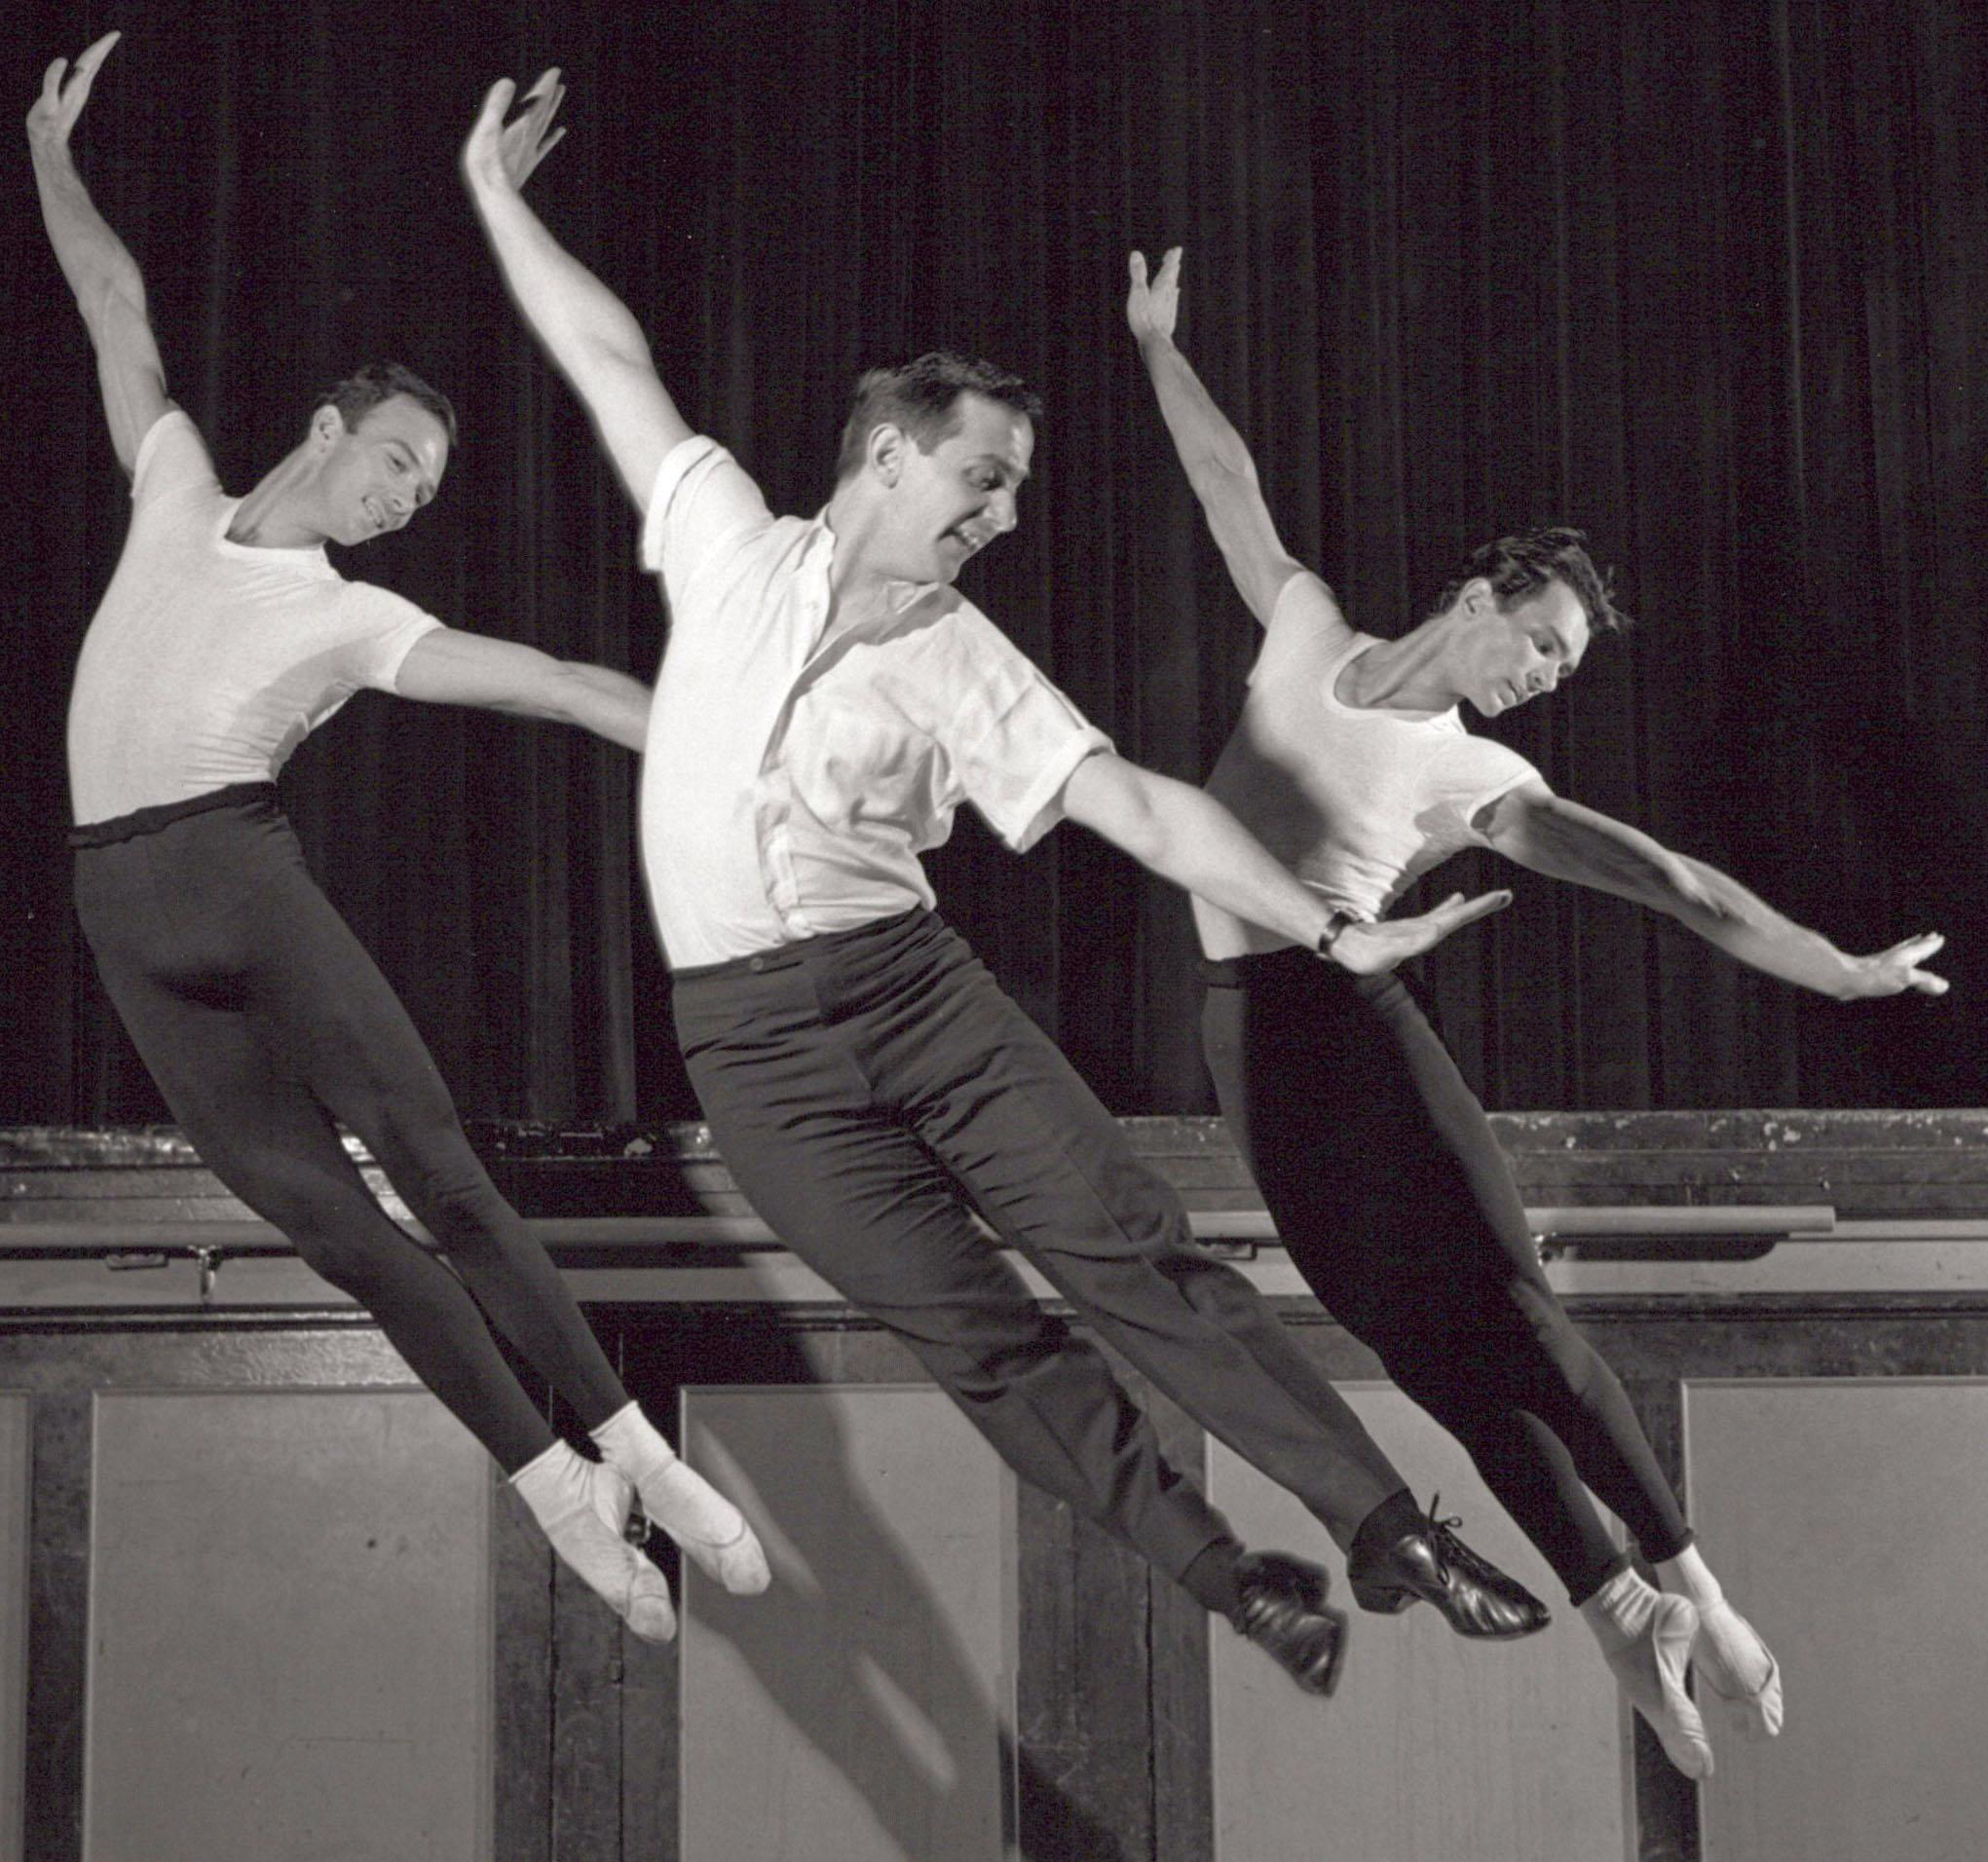 Choreograph Robert Joffrey, Nels Jorgensen & Paul Sutherland beim Tanzen  – Photograph von Jack Mitchell